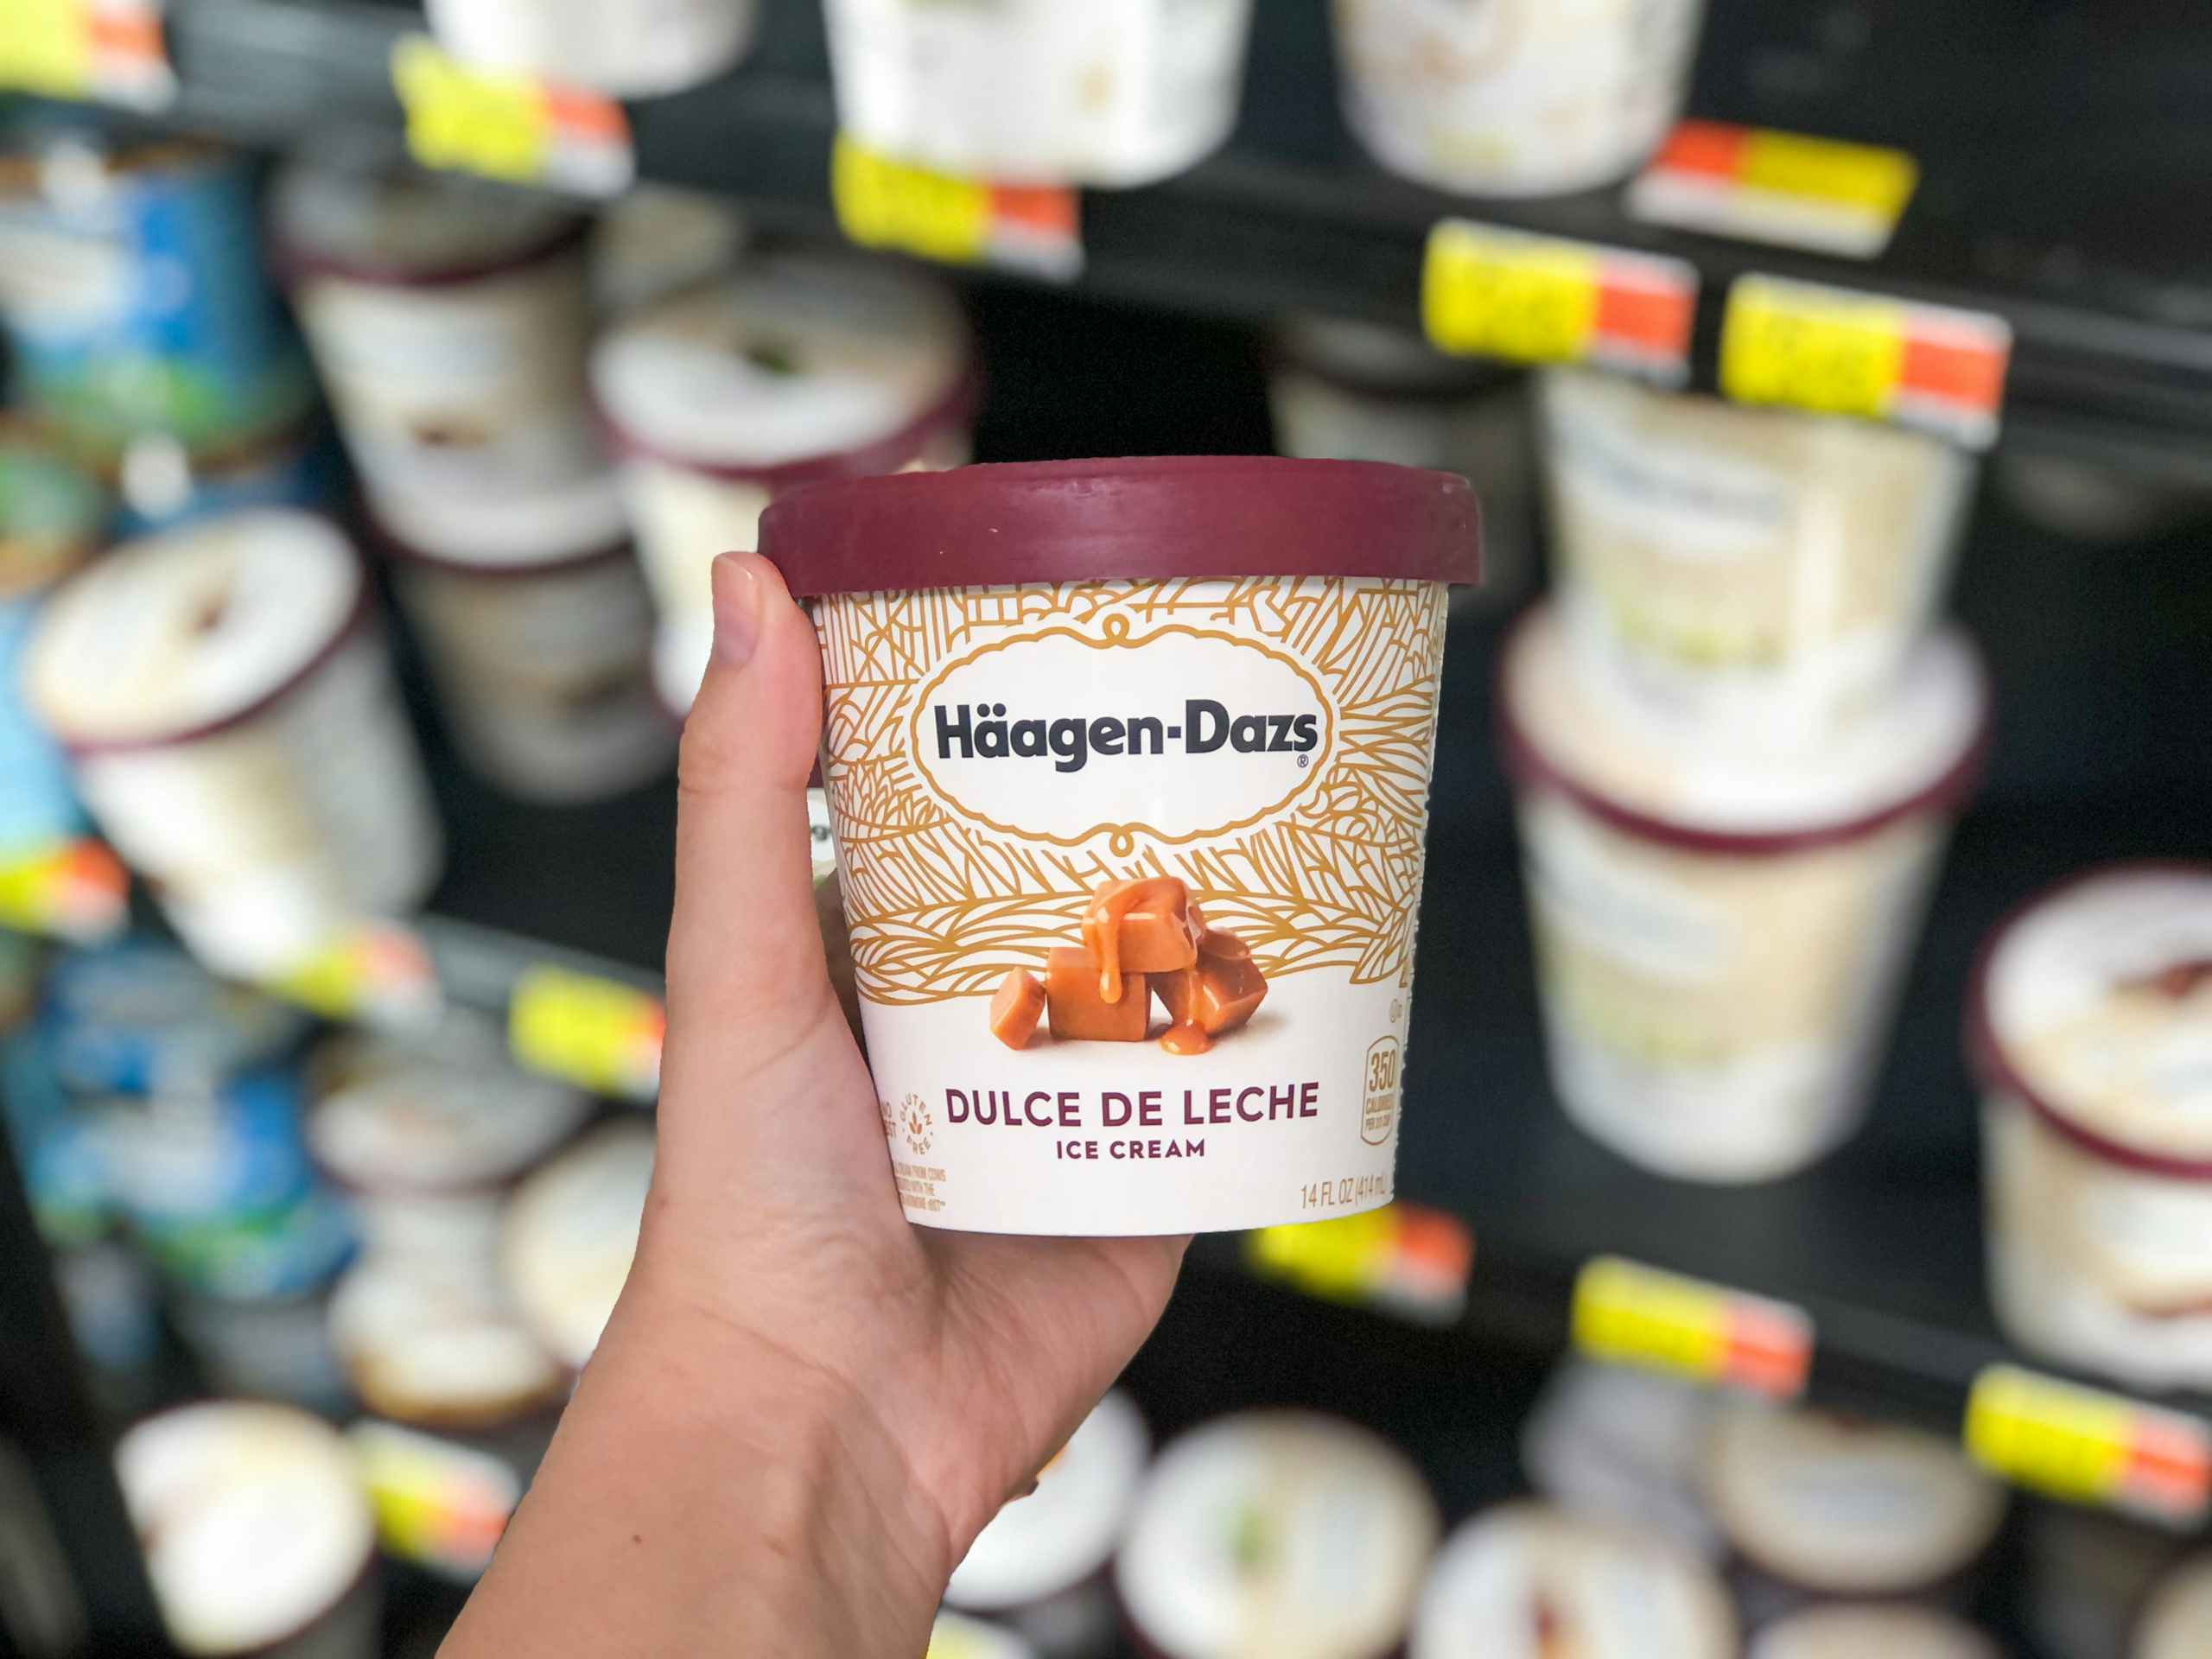 holding ice cream in front of ice cream shelf